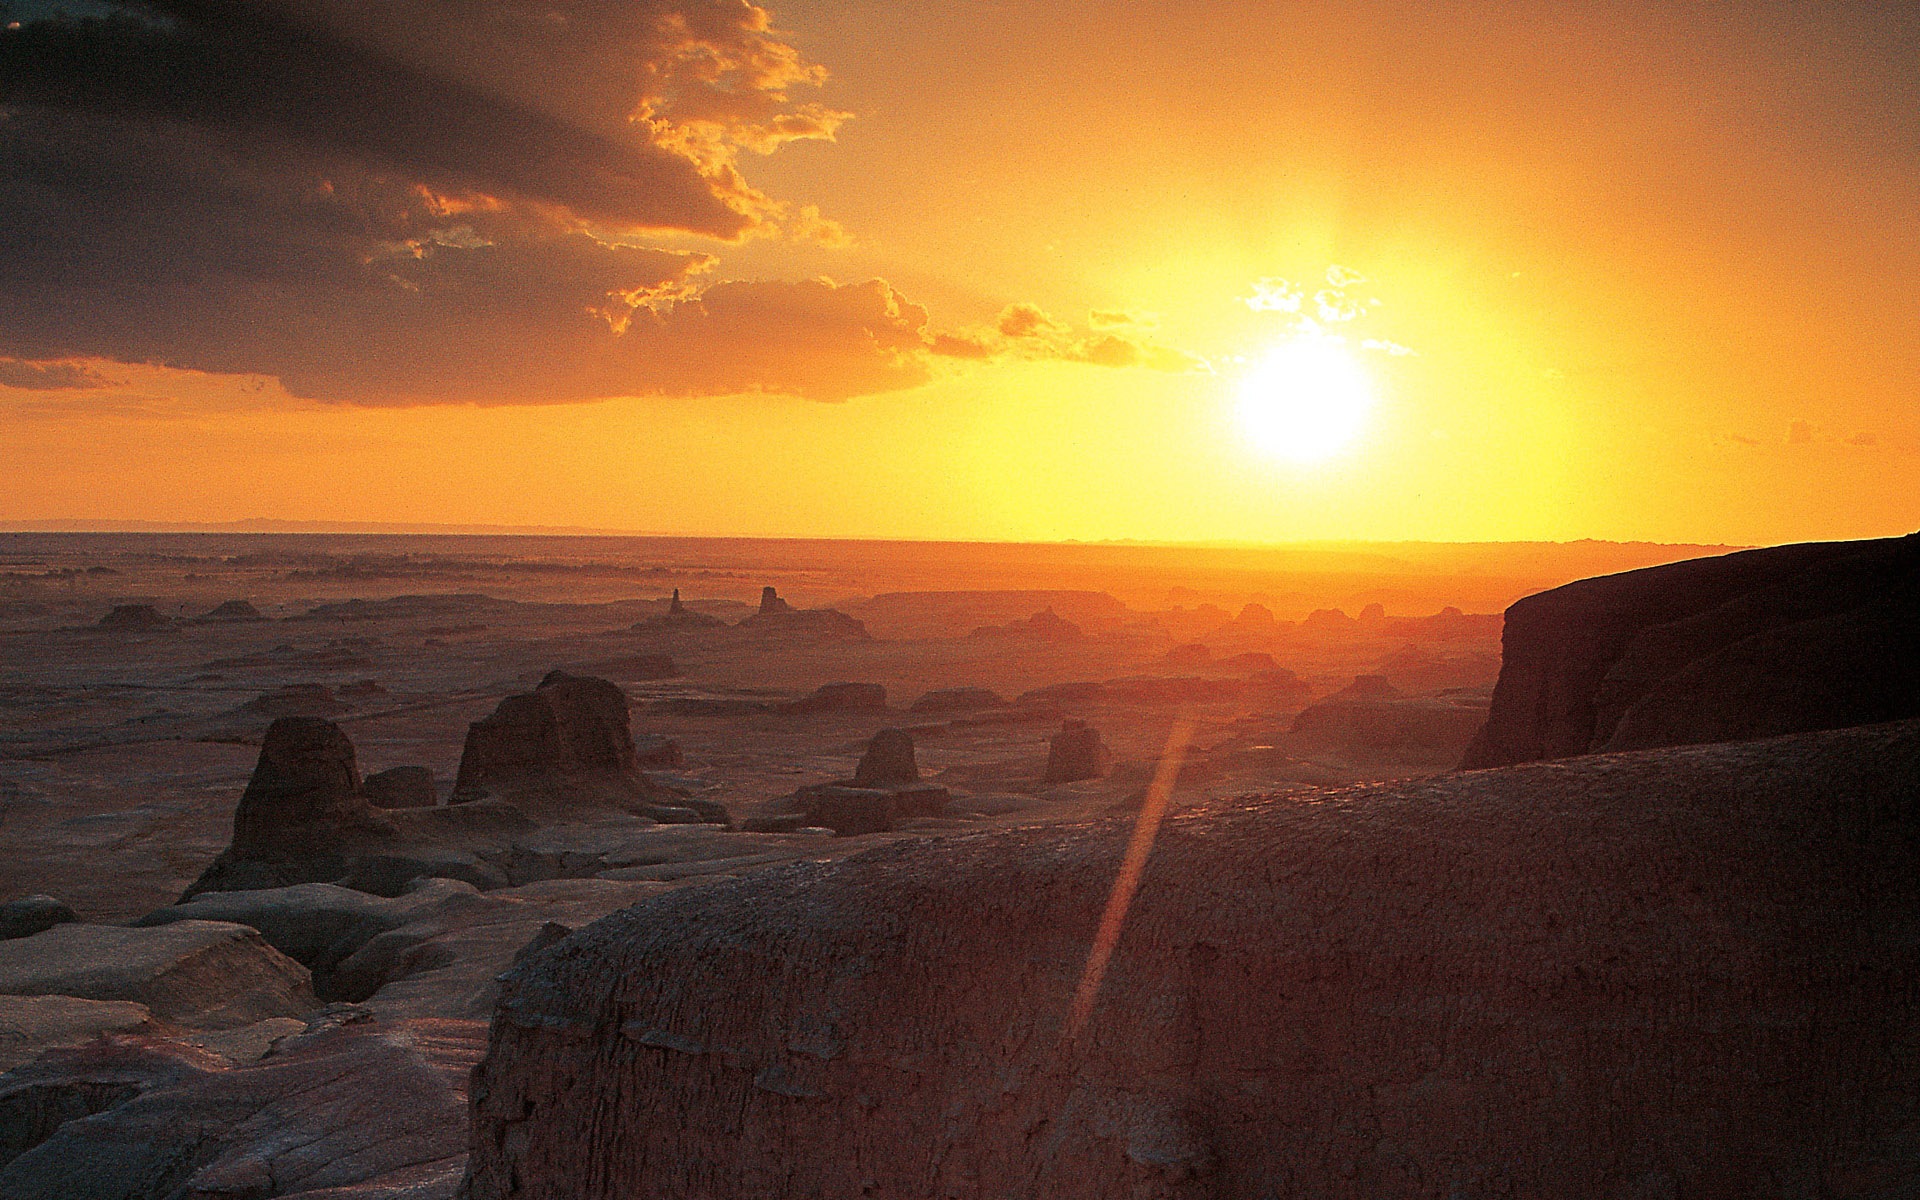 Les déserts chauds et arides, de Windows 8 fonds d'écran widescreen panoramique #12 - 1920x1200